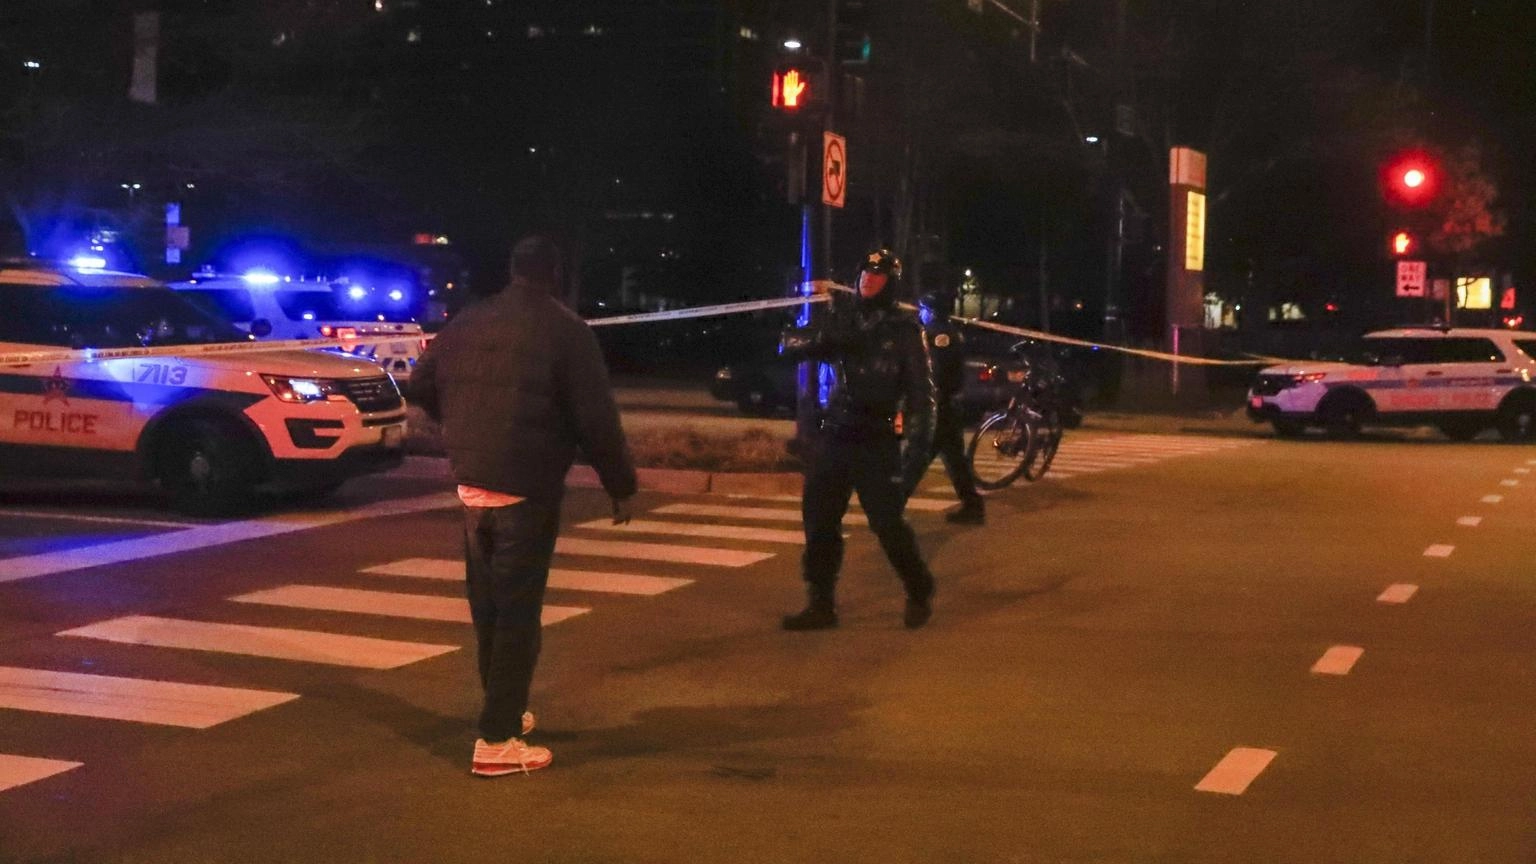 Chicago,due giovani uccisi a colpi di pistola fuori scuola